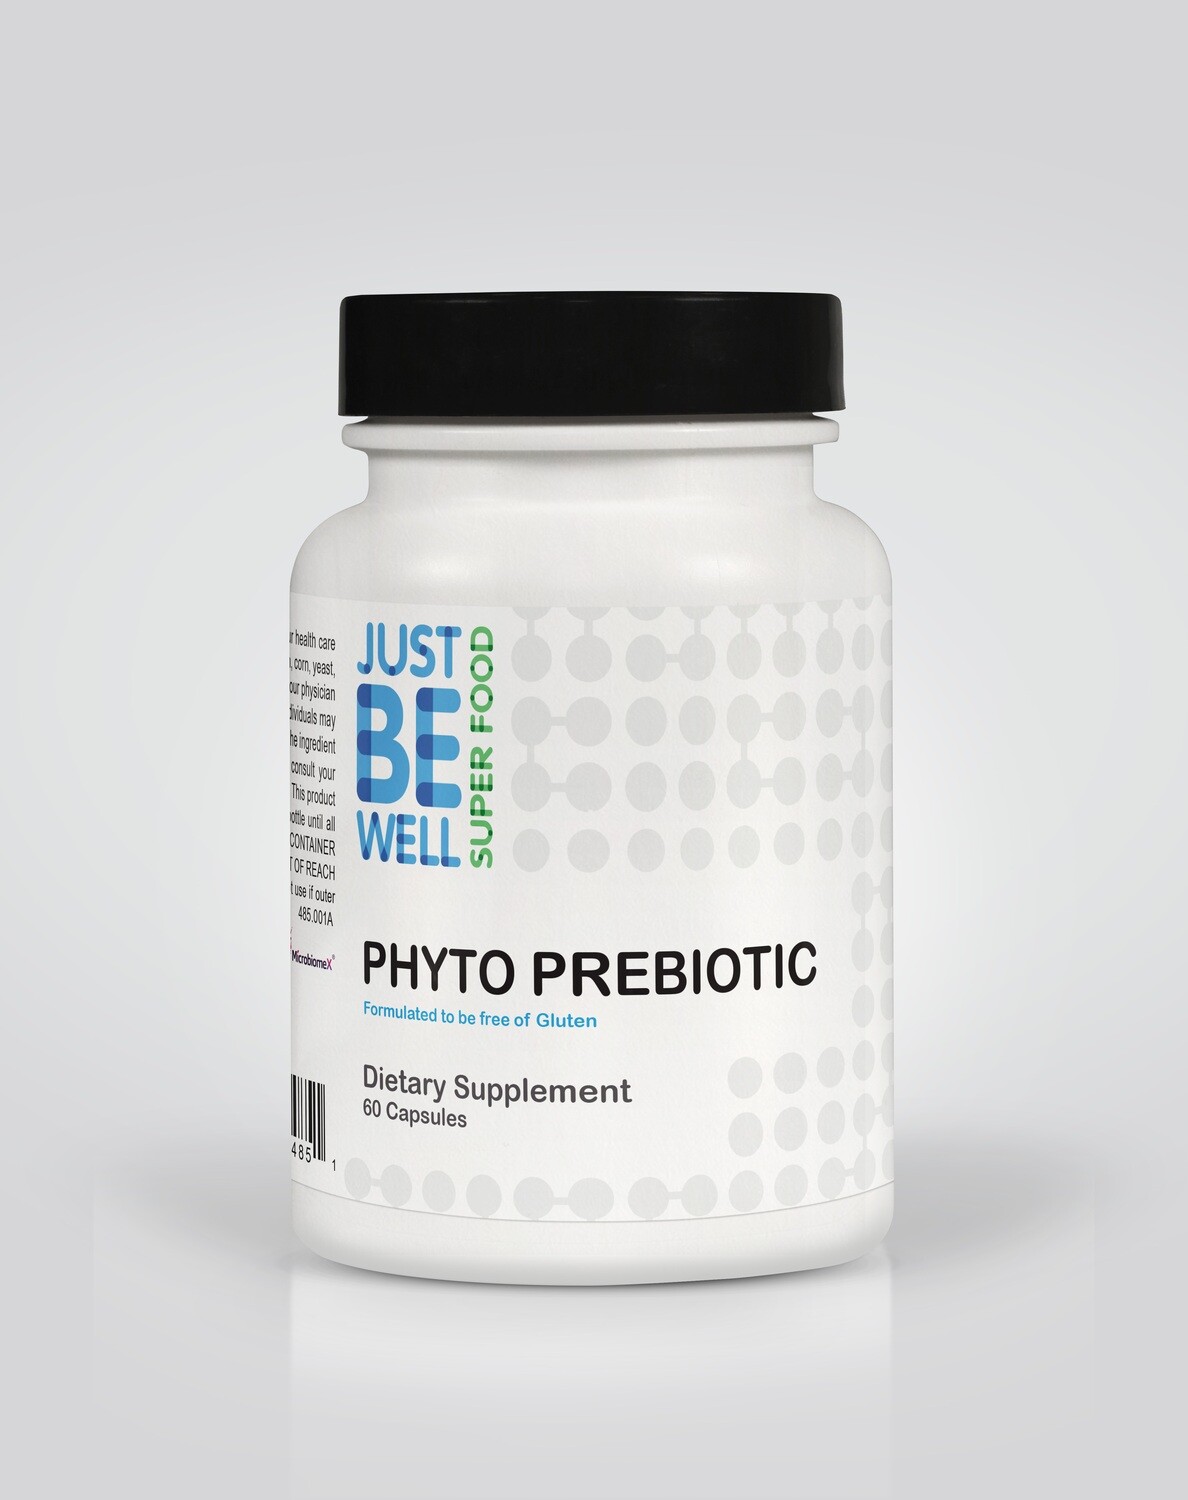 Phyto Prebiotic